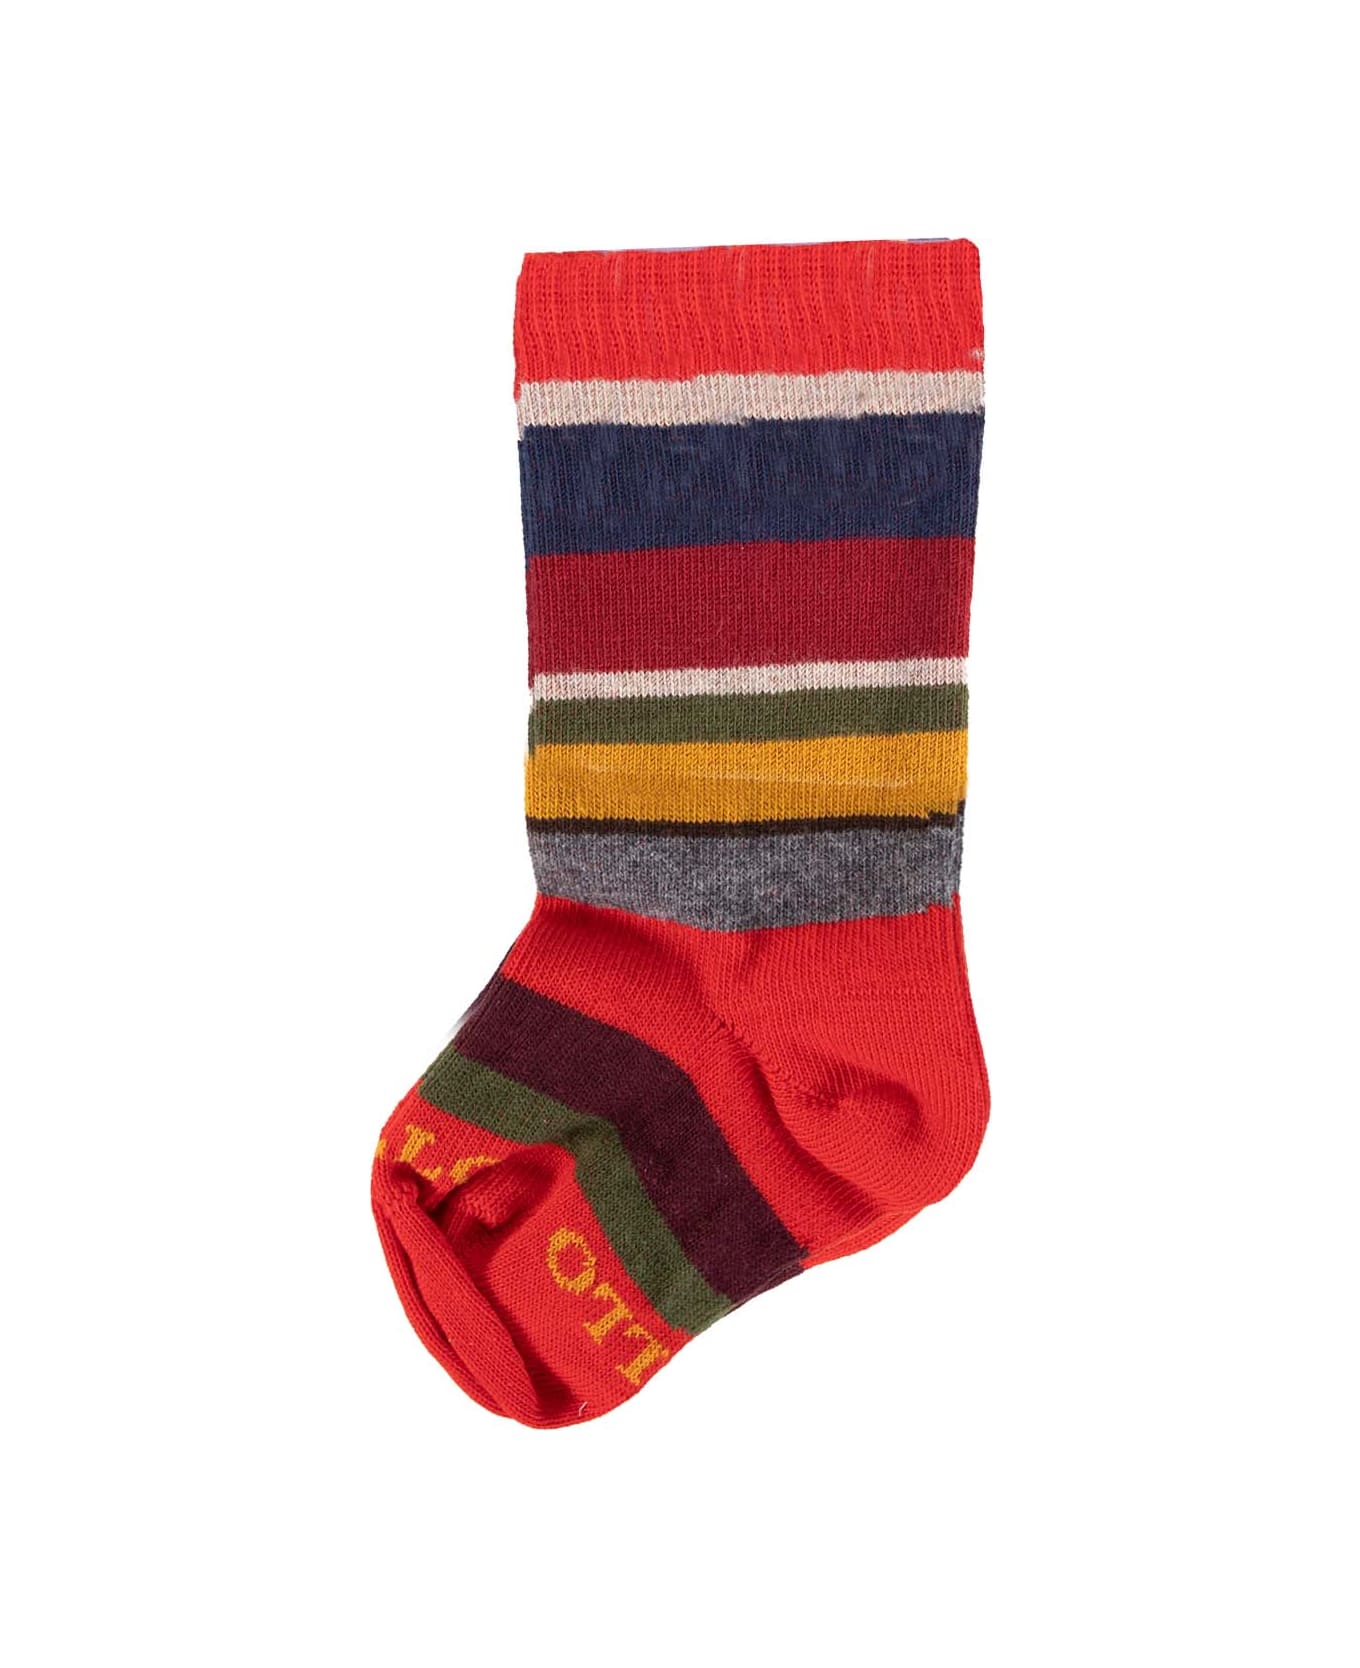 Gallo Cotton Socks - Red